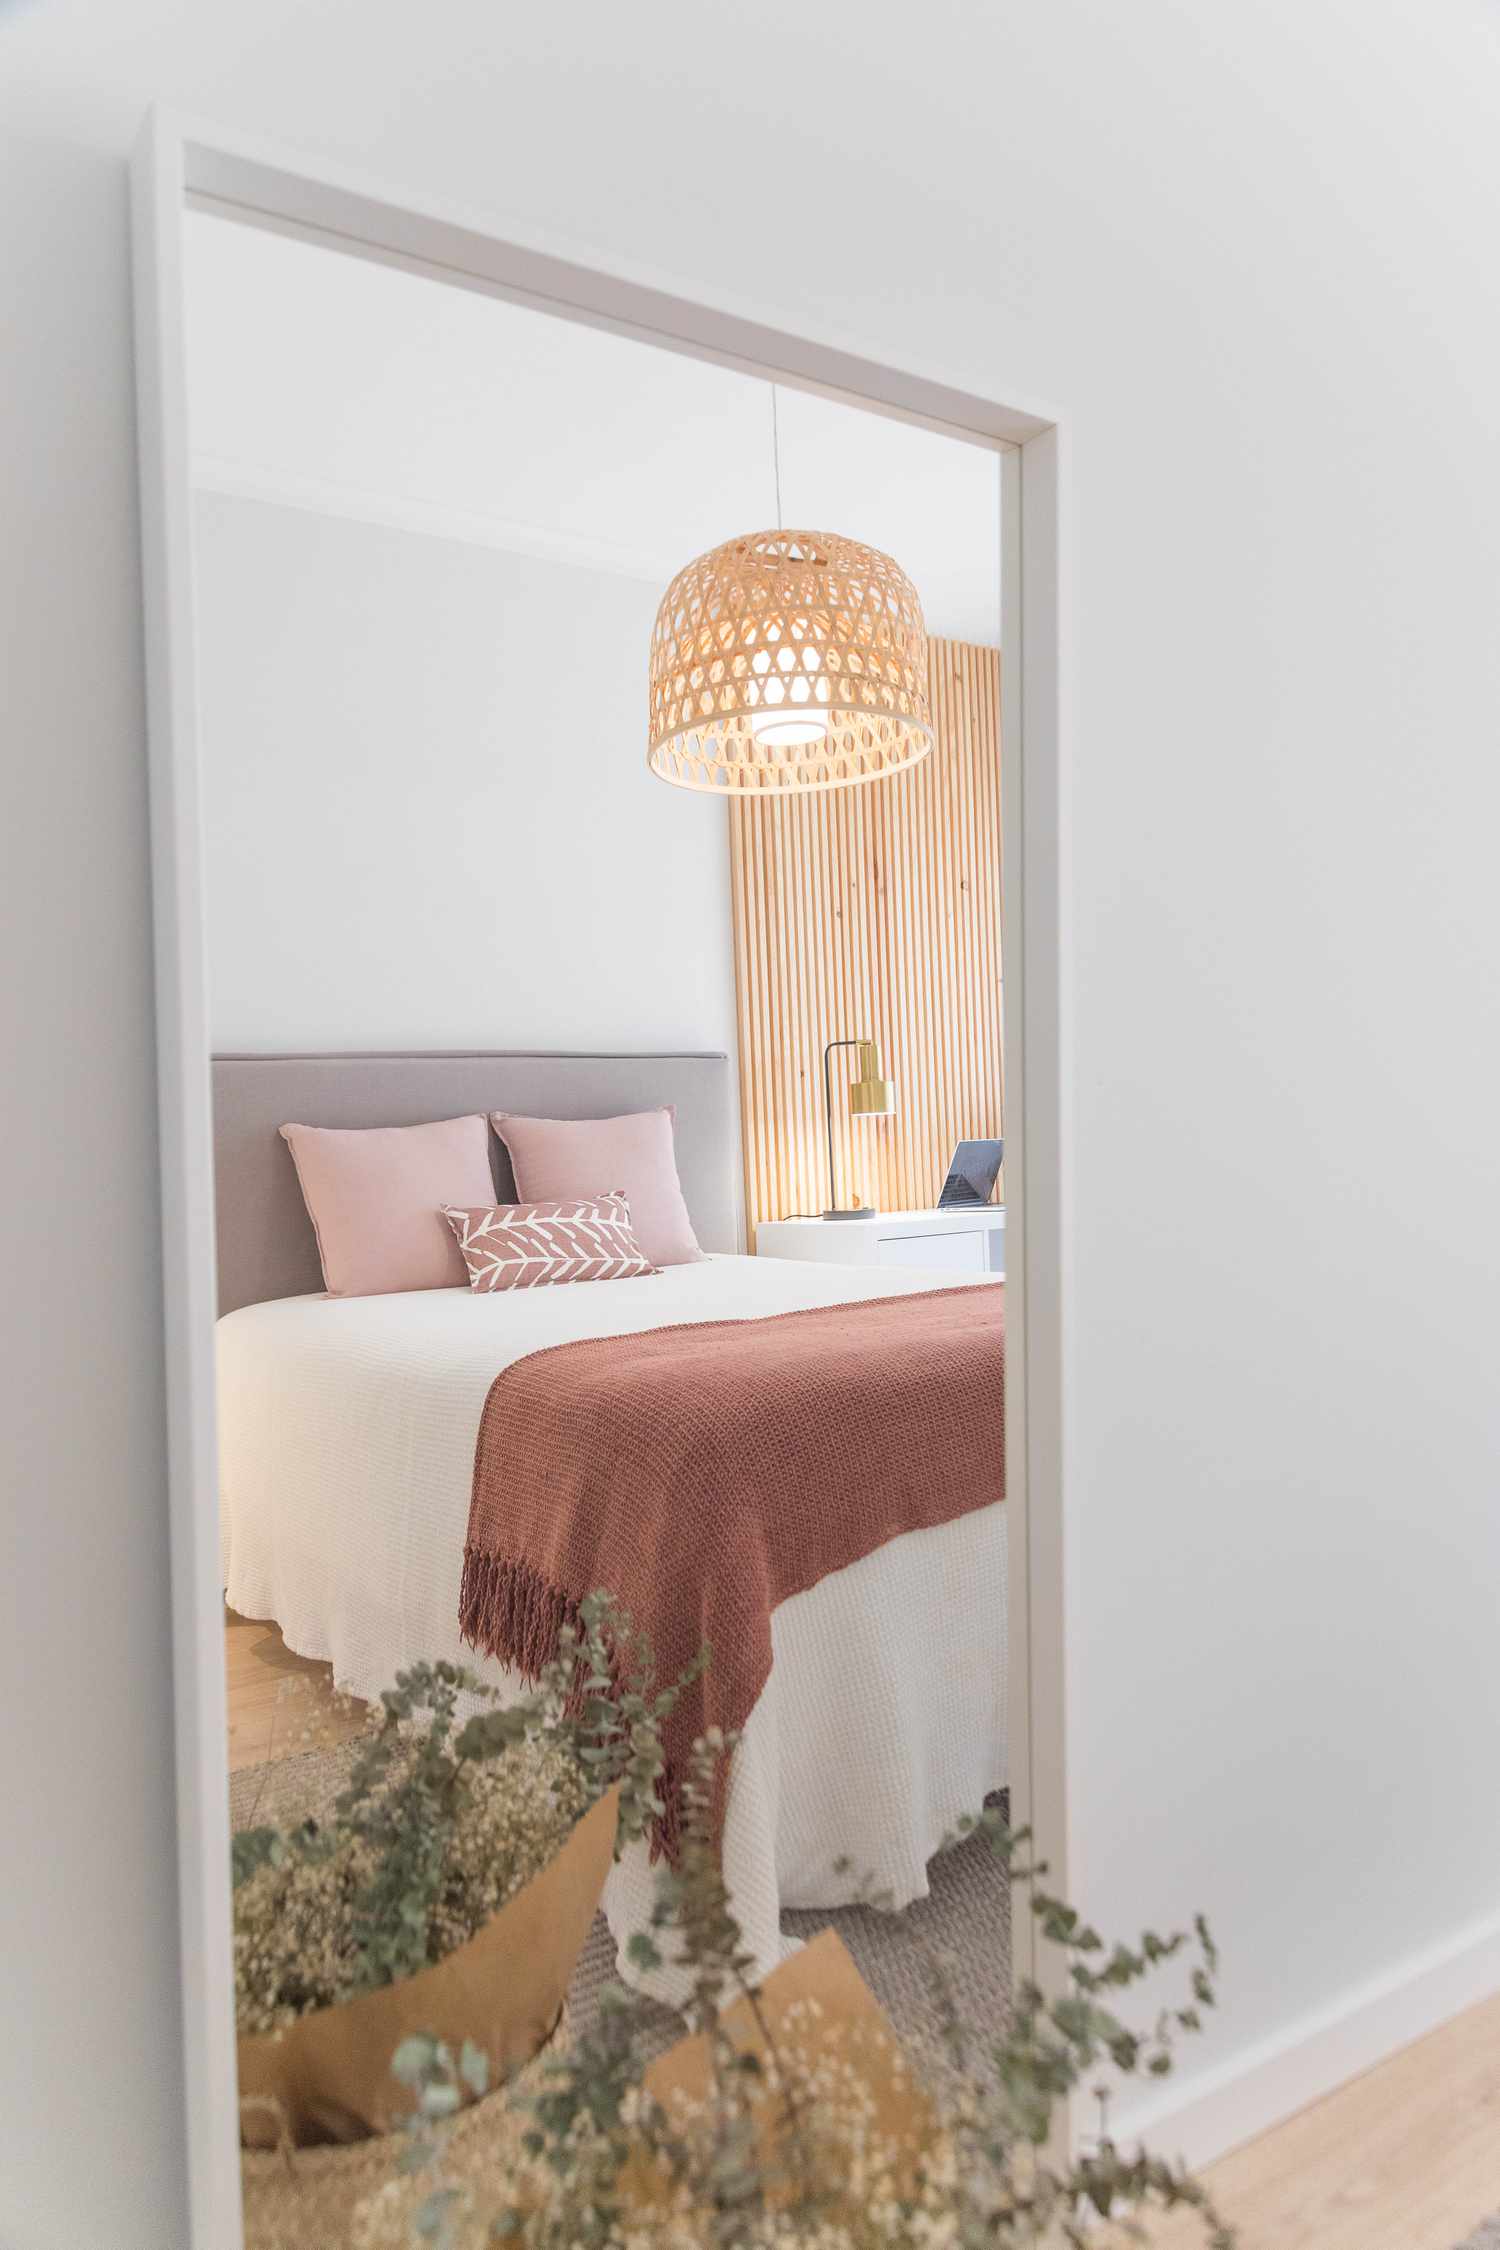 Espelho mostrando o reflexo de uma cama com travesseiros rosa e cobertor cor de ferrugem